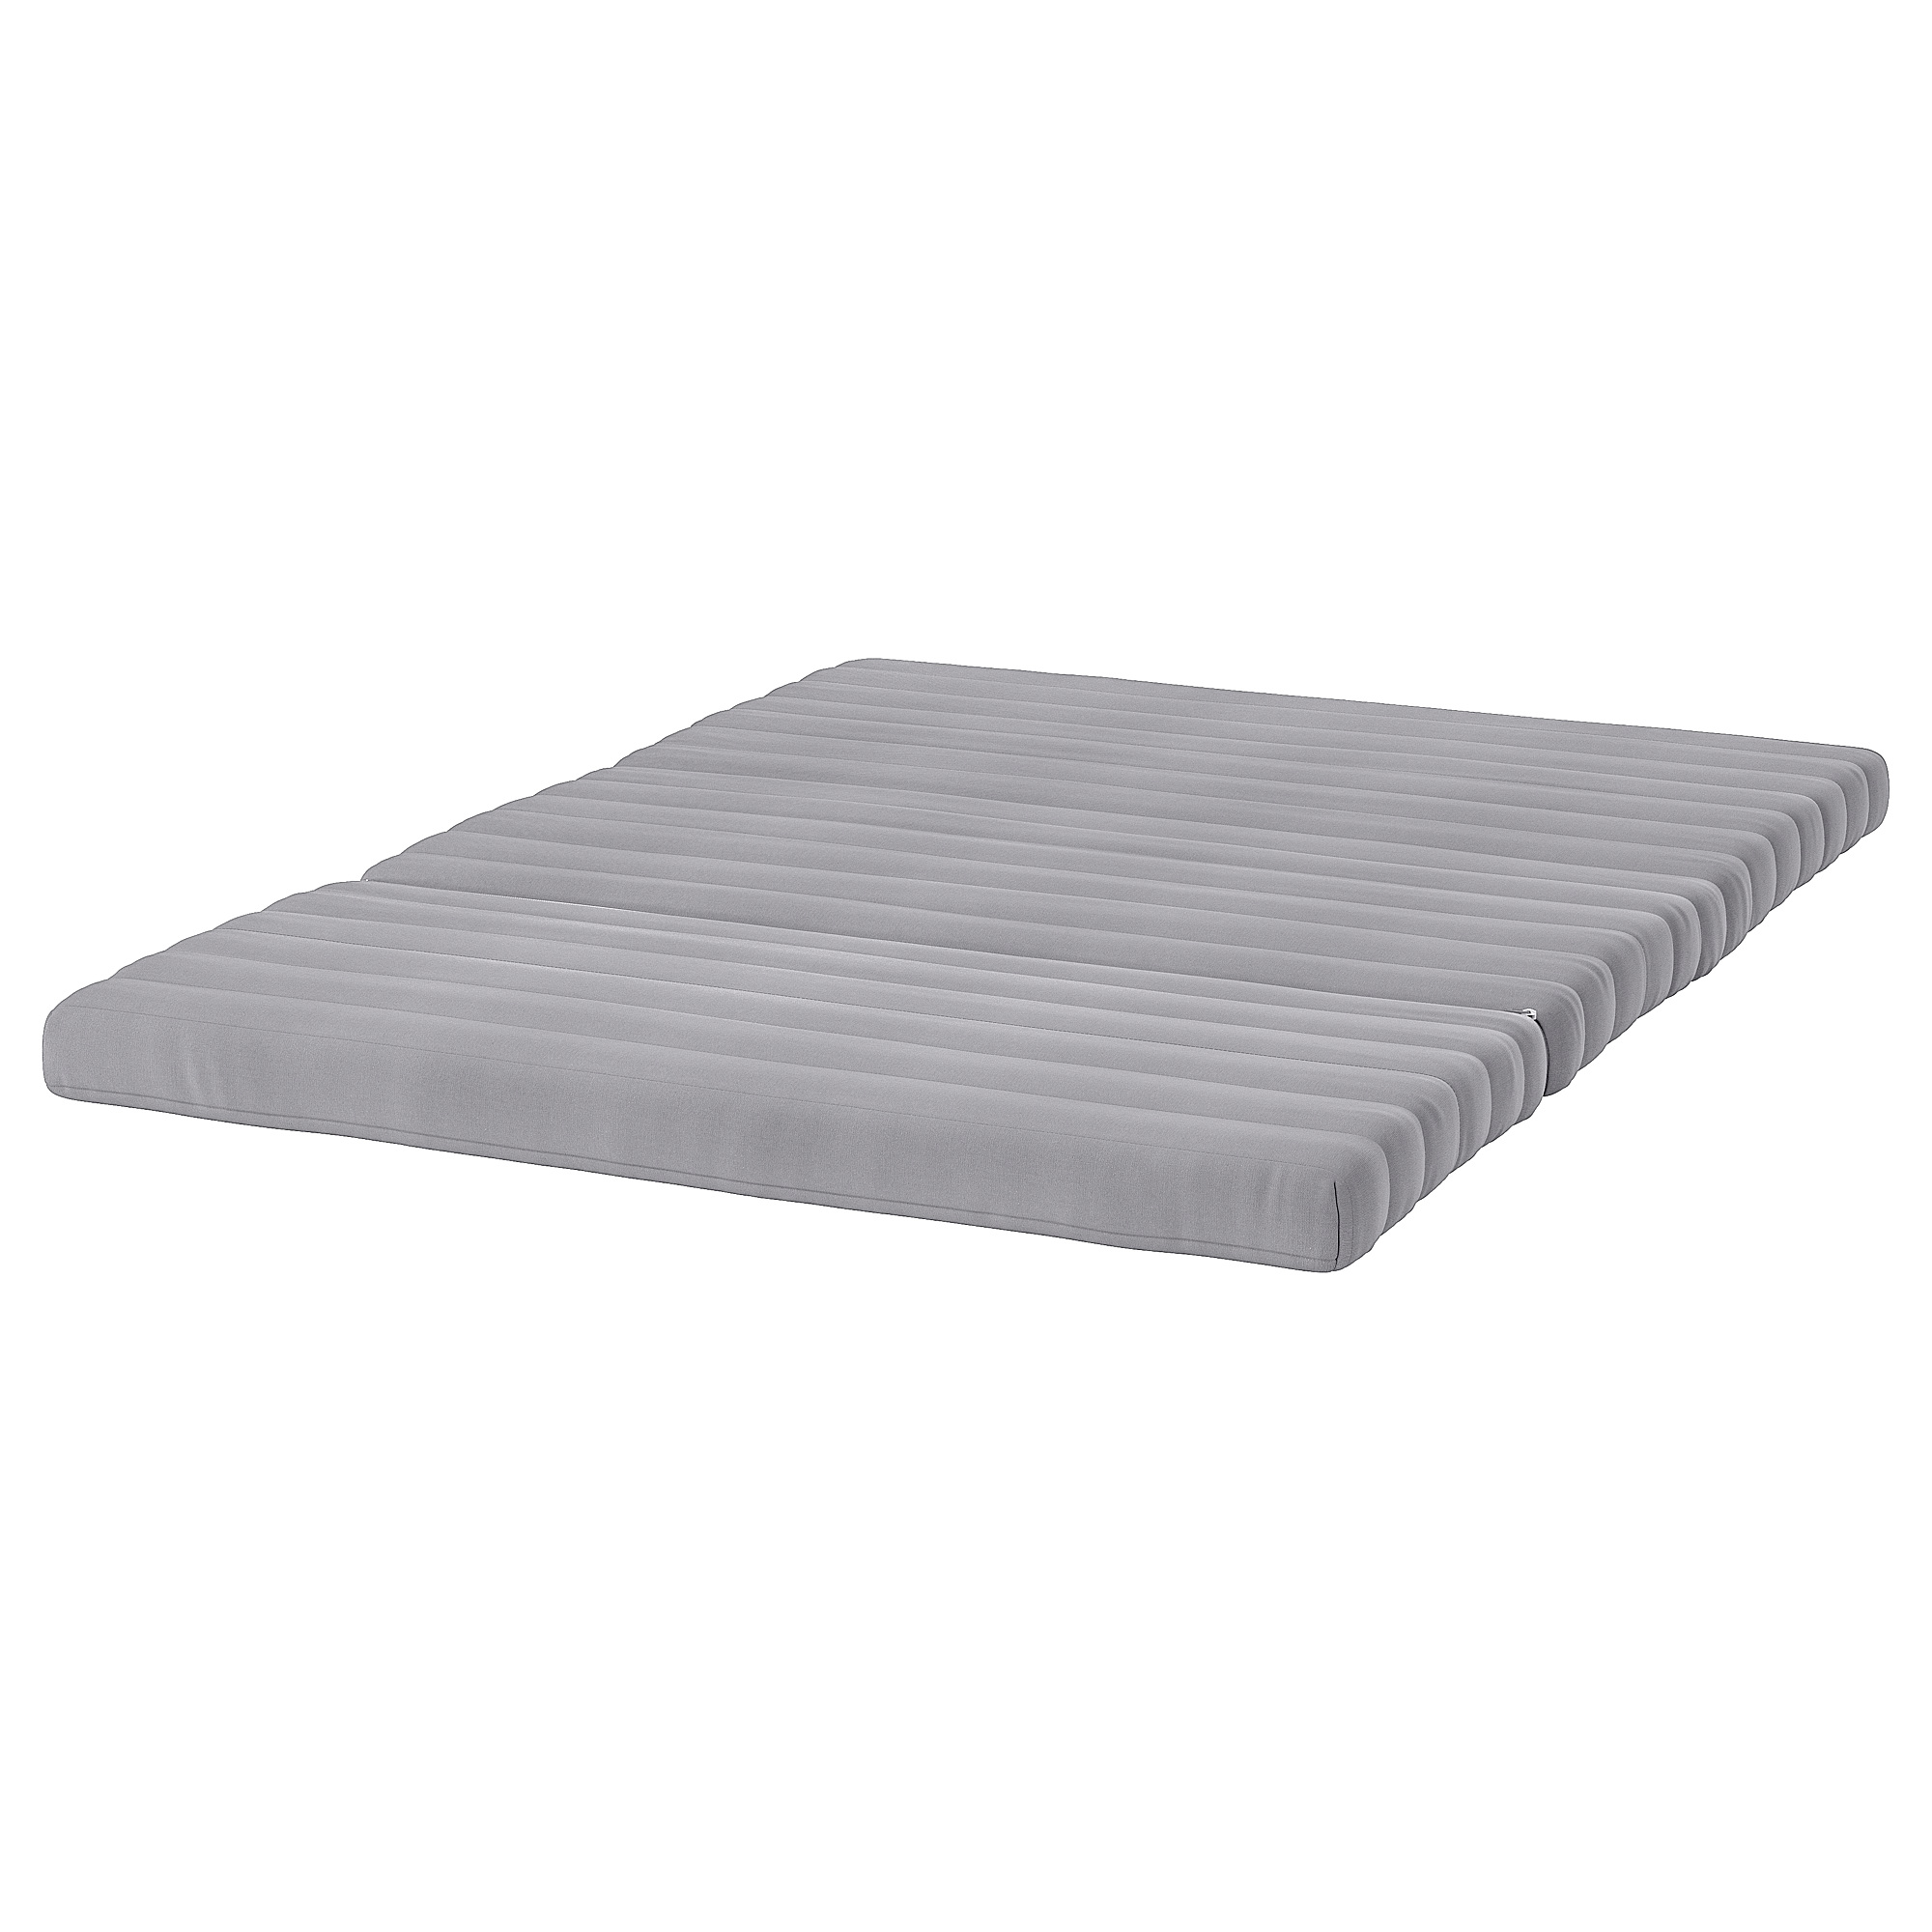 LYCKSELE MURBO mattress